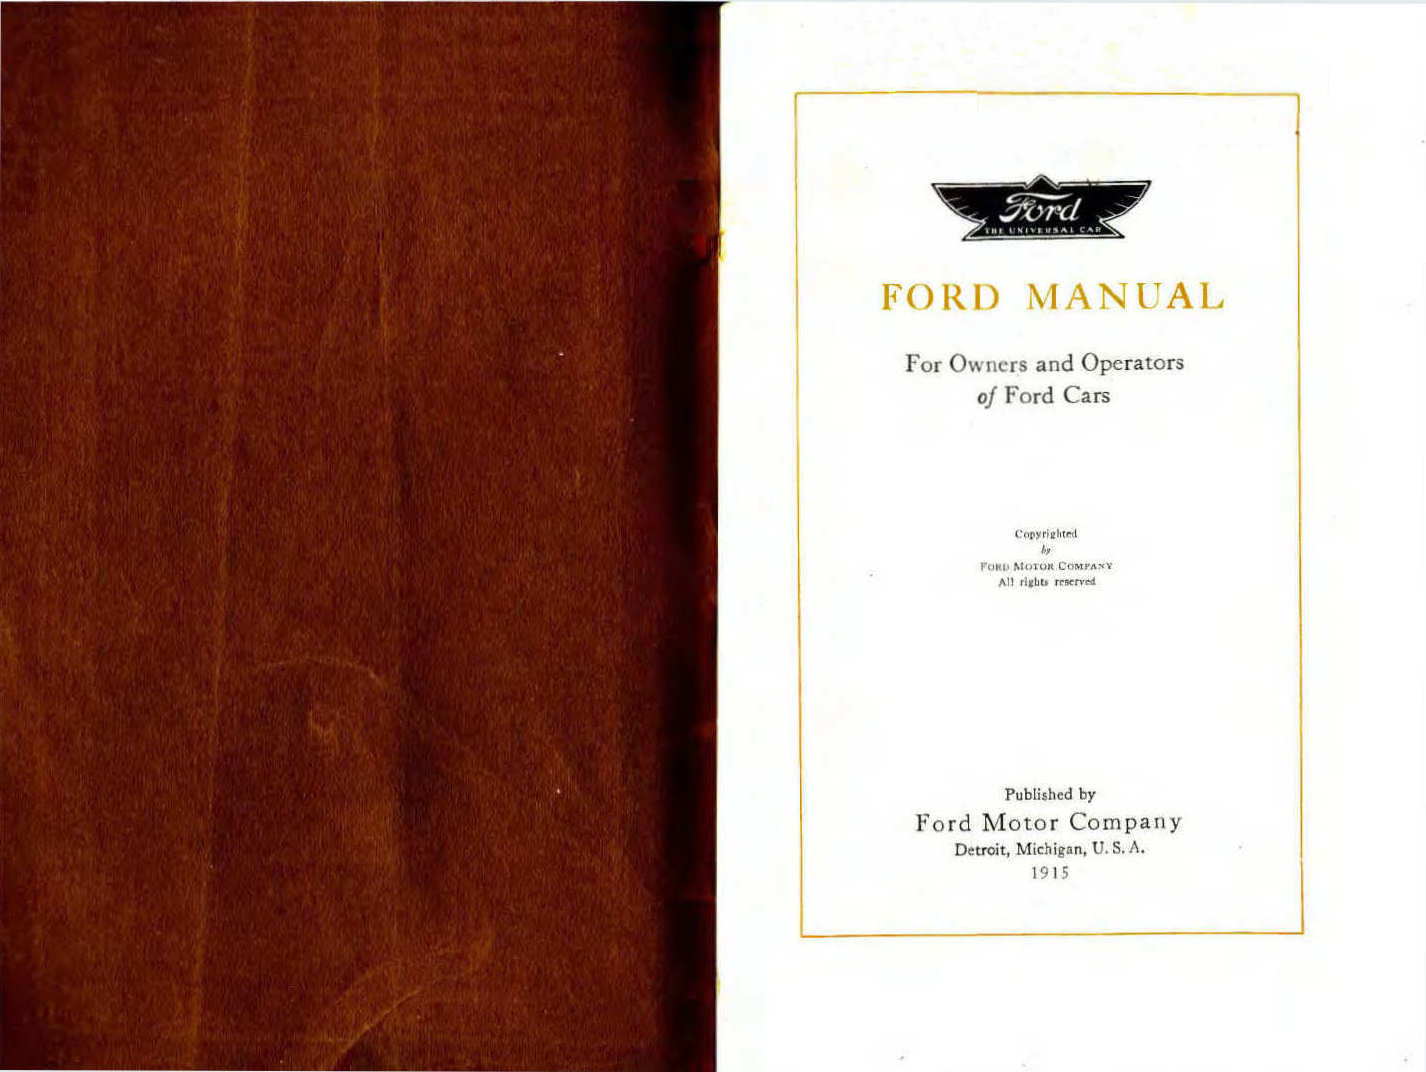 n_1915 Ford Owners Manual-00a-01.jpg